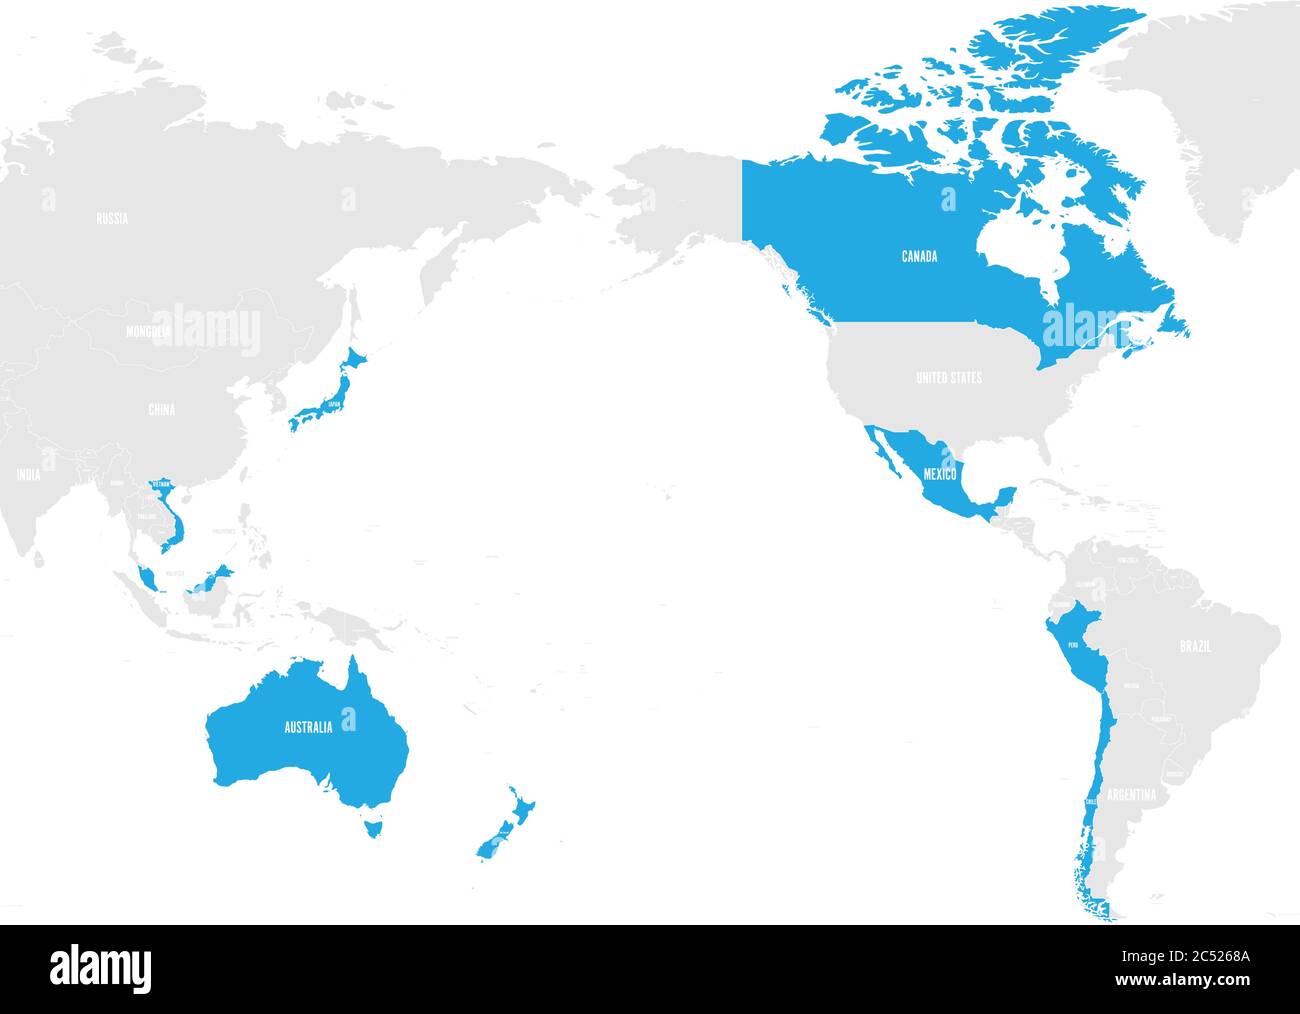 Carte de l'Entente globale et progressive pour le Partenariat transpacifique, le CPPTP ou le PPT11. Etats membres surlignés en bleu. Illustration vectorielle. Illustration de Vecteur